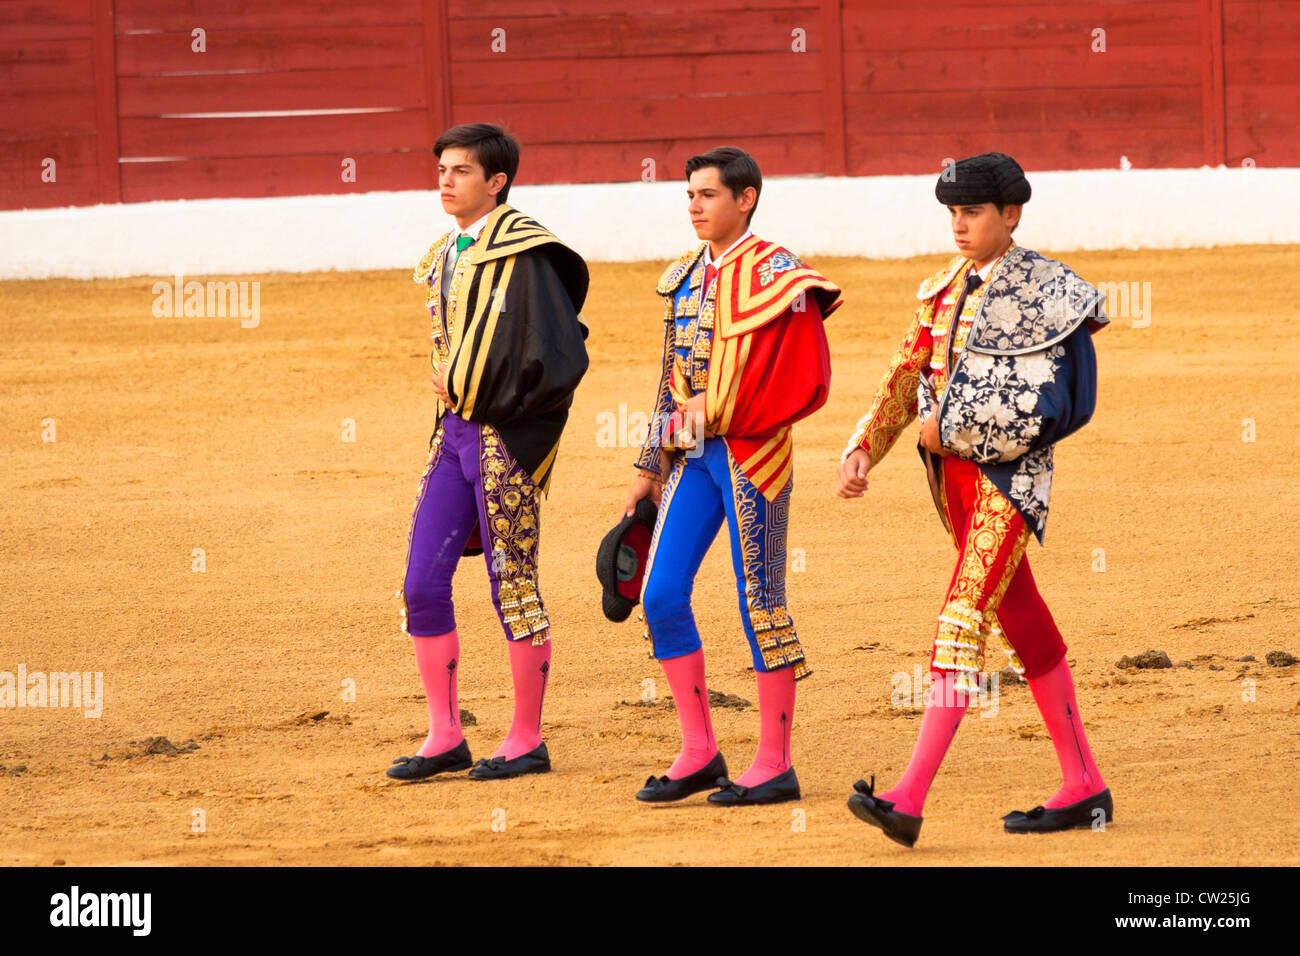 Junge spanische Stierkämpfer bereit für den Stierkampf. 20. Juli 2012, La Linea De La Concepcion, Spanien. Stockfoto